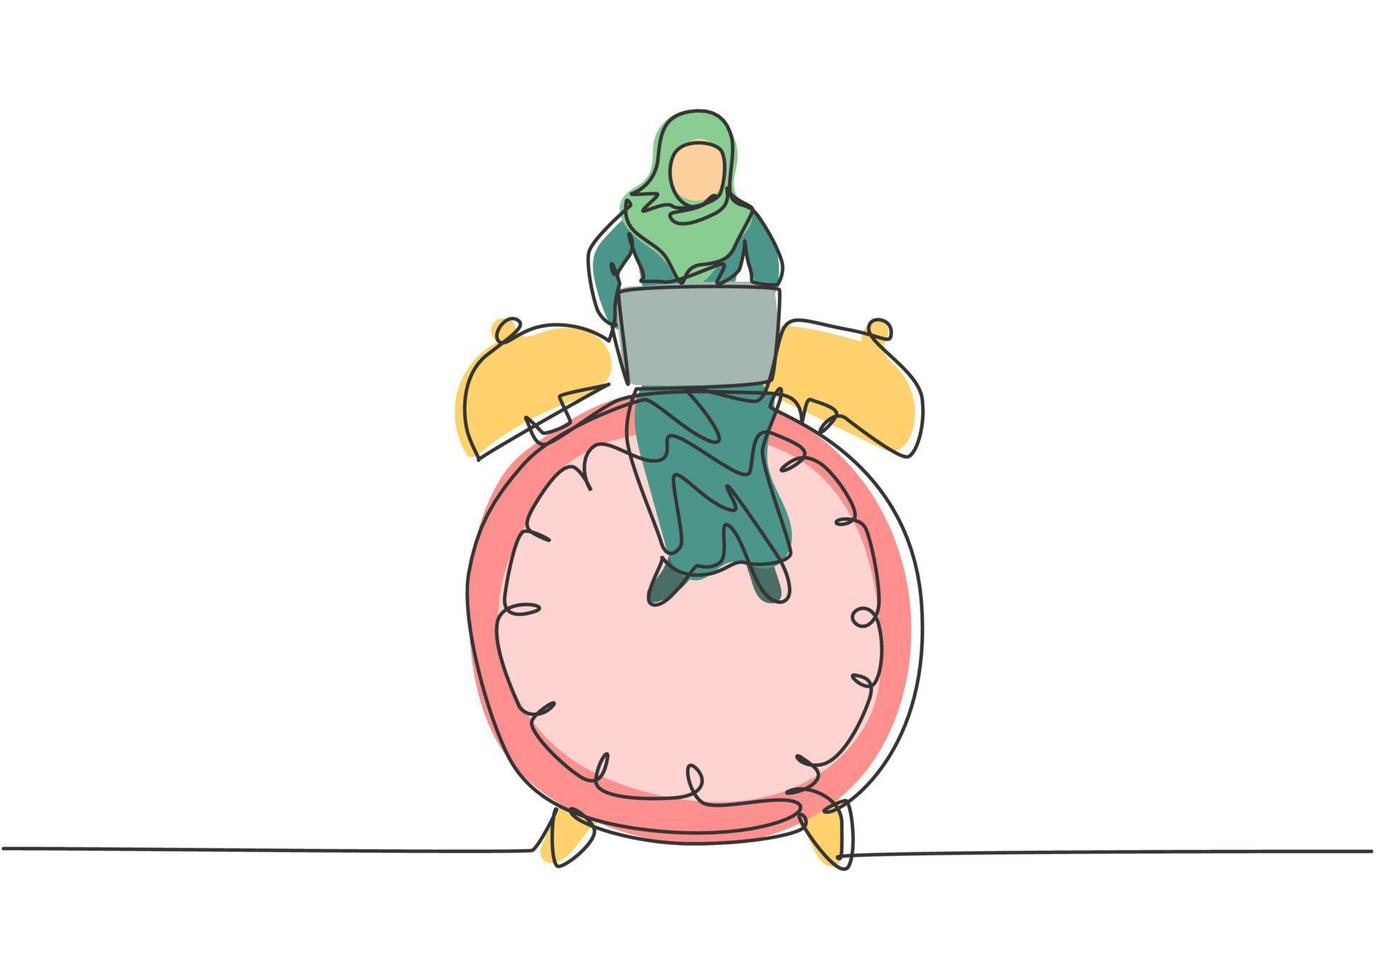 Dibujo de línea continua única joven mujer de negocios árabe sentada en un gran reloj despertador analógico y escribiendo en la computadora portátil. concepto de metáfora de disciplina empresarial. Ilustración de vector de diseño gráfico de dibujo de una línea.